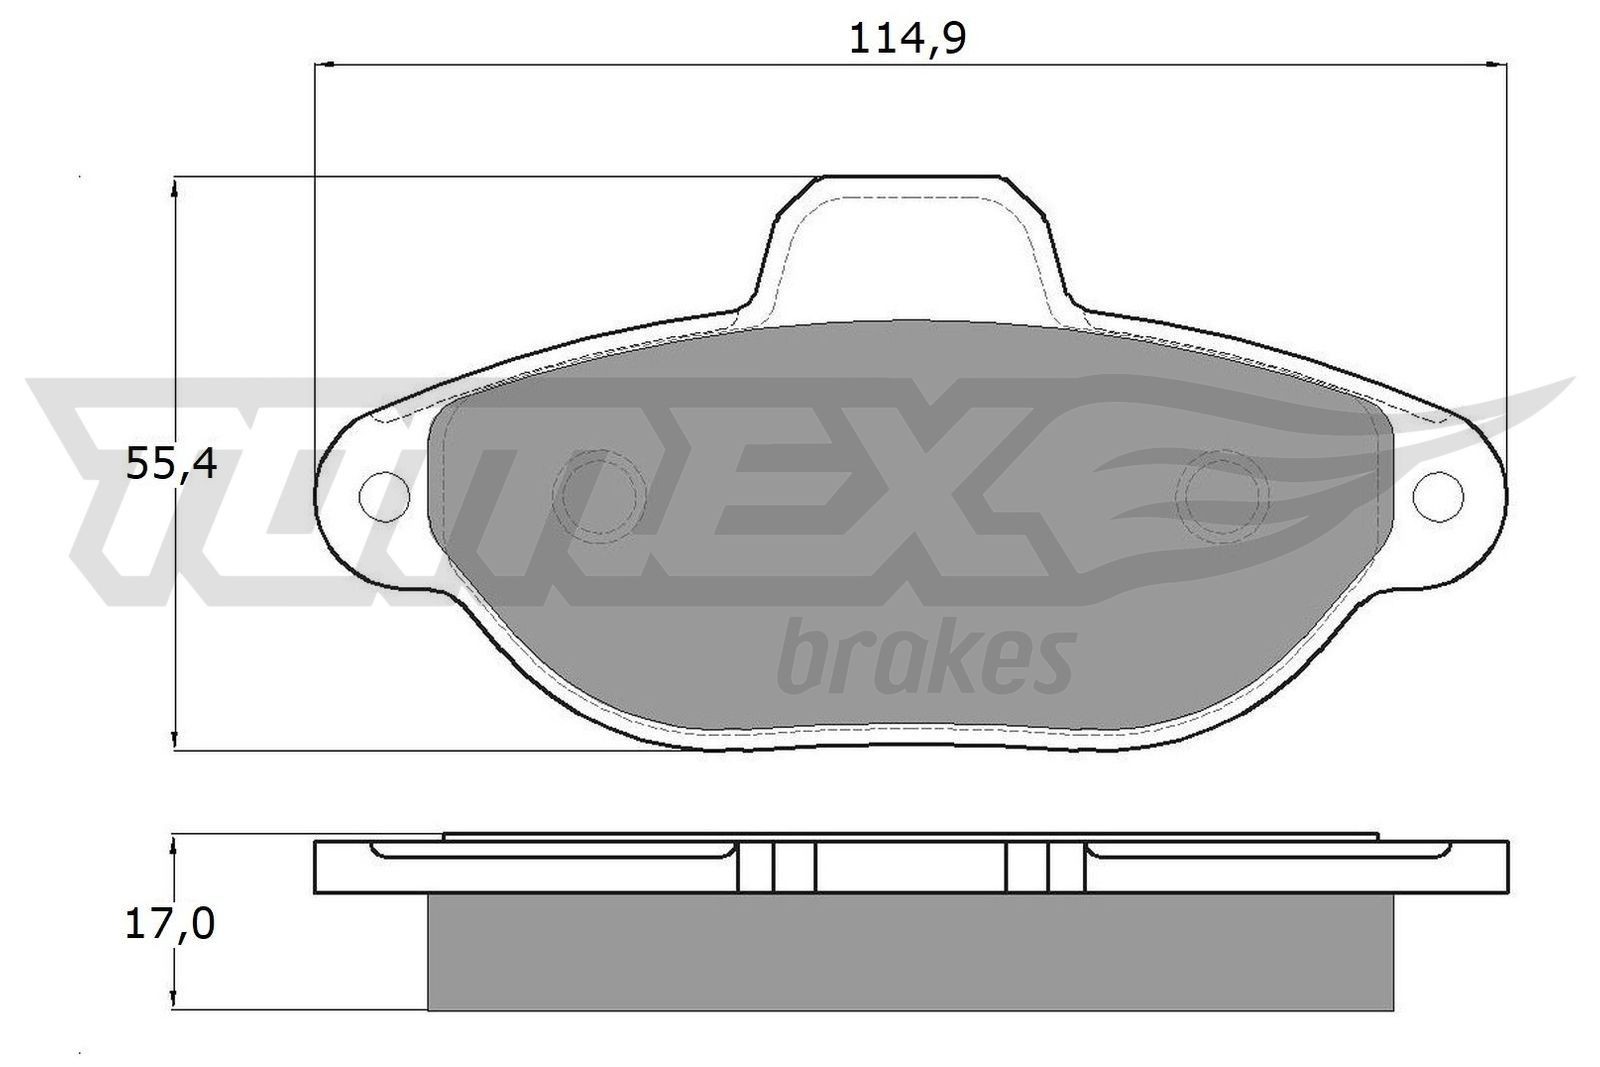 Originali TX 12-41 TOMEX brakes Pasticche FIAT